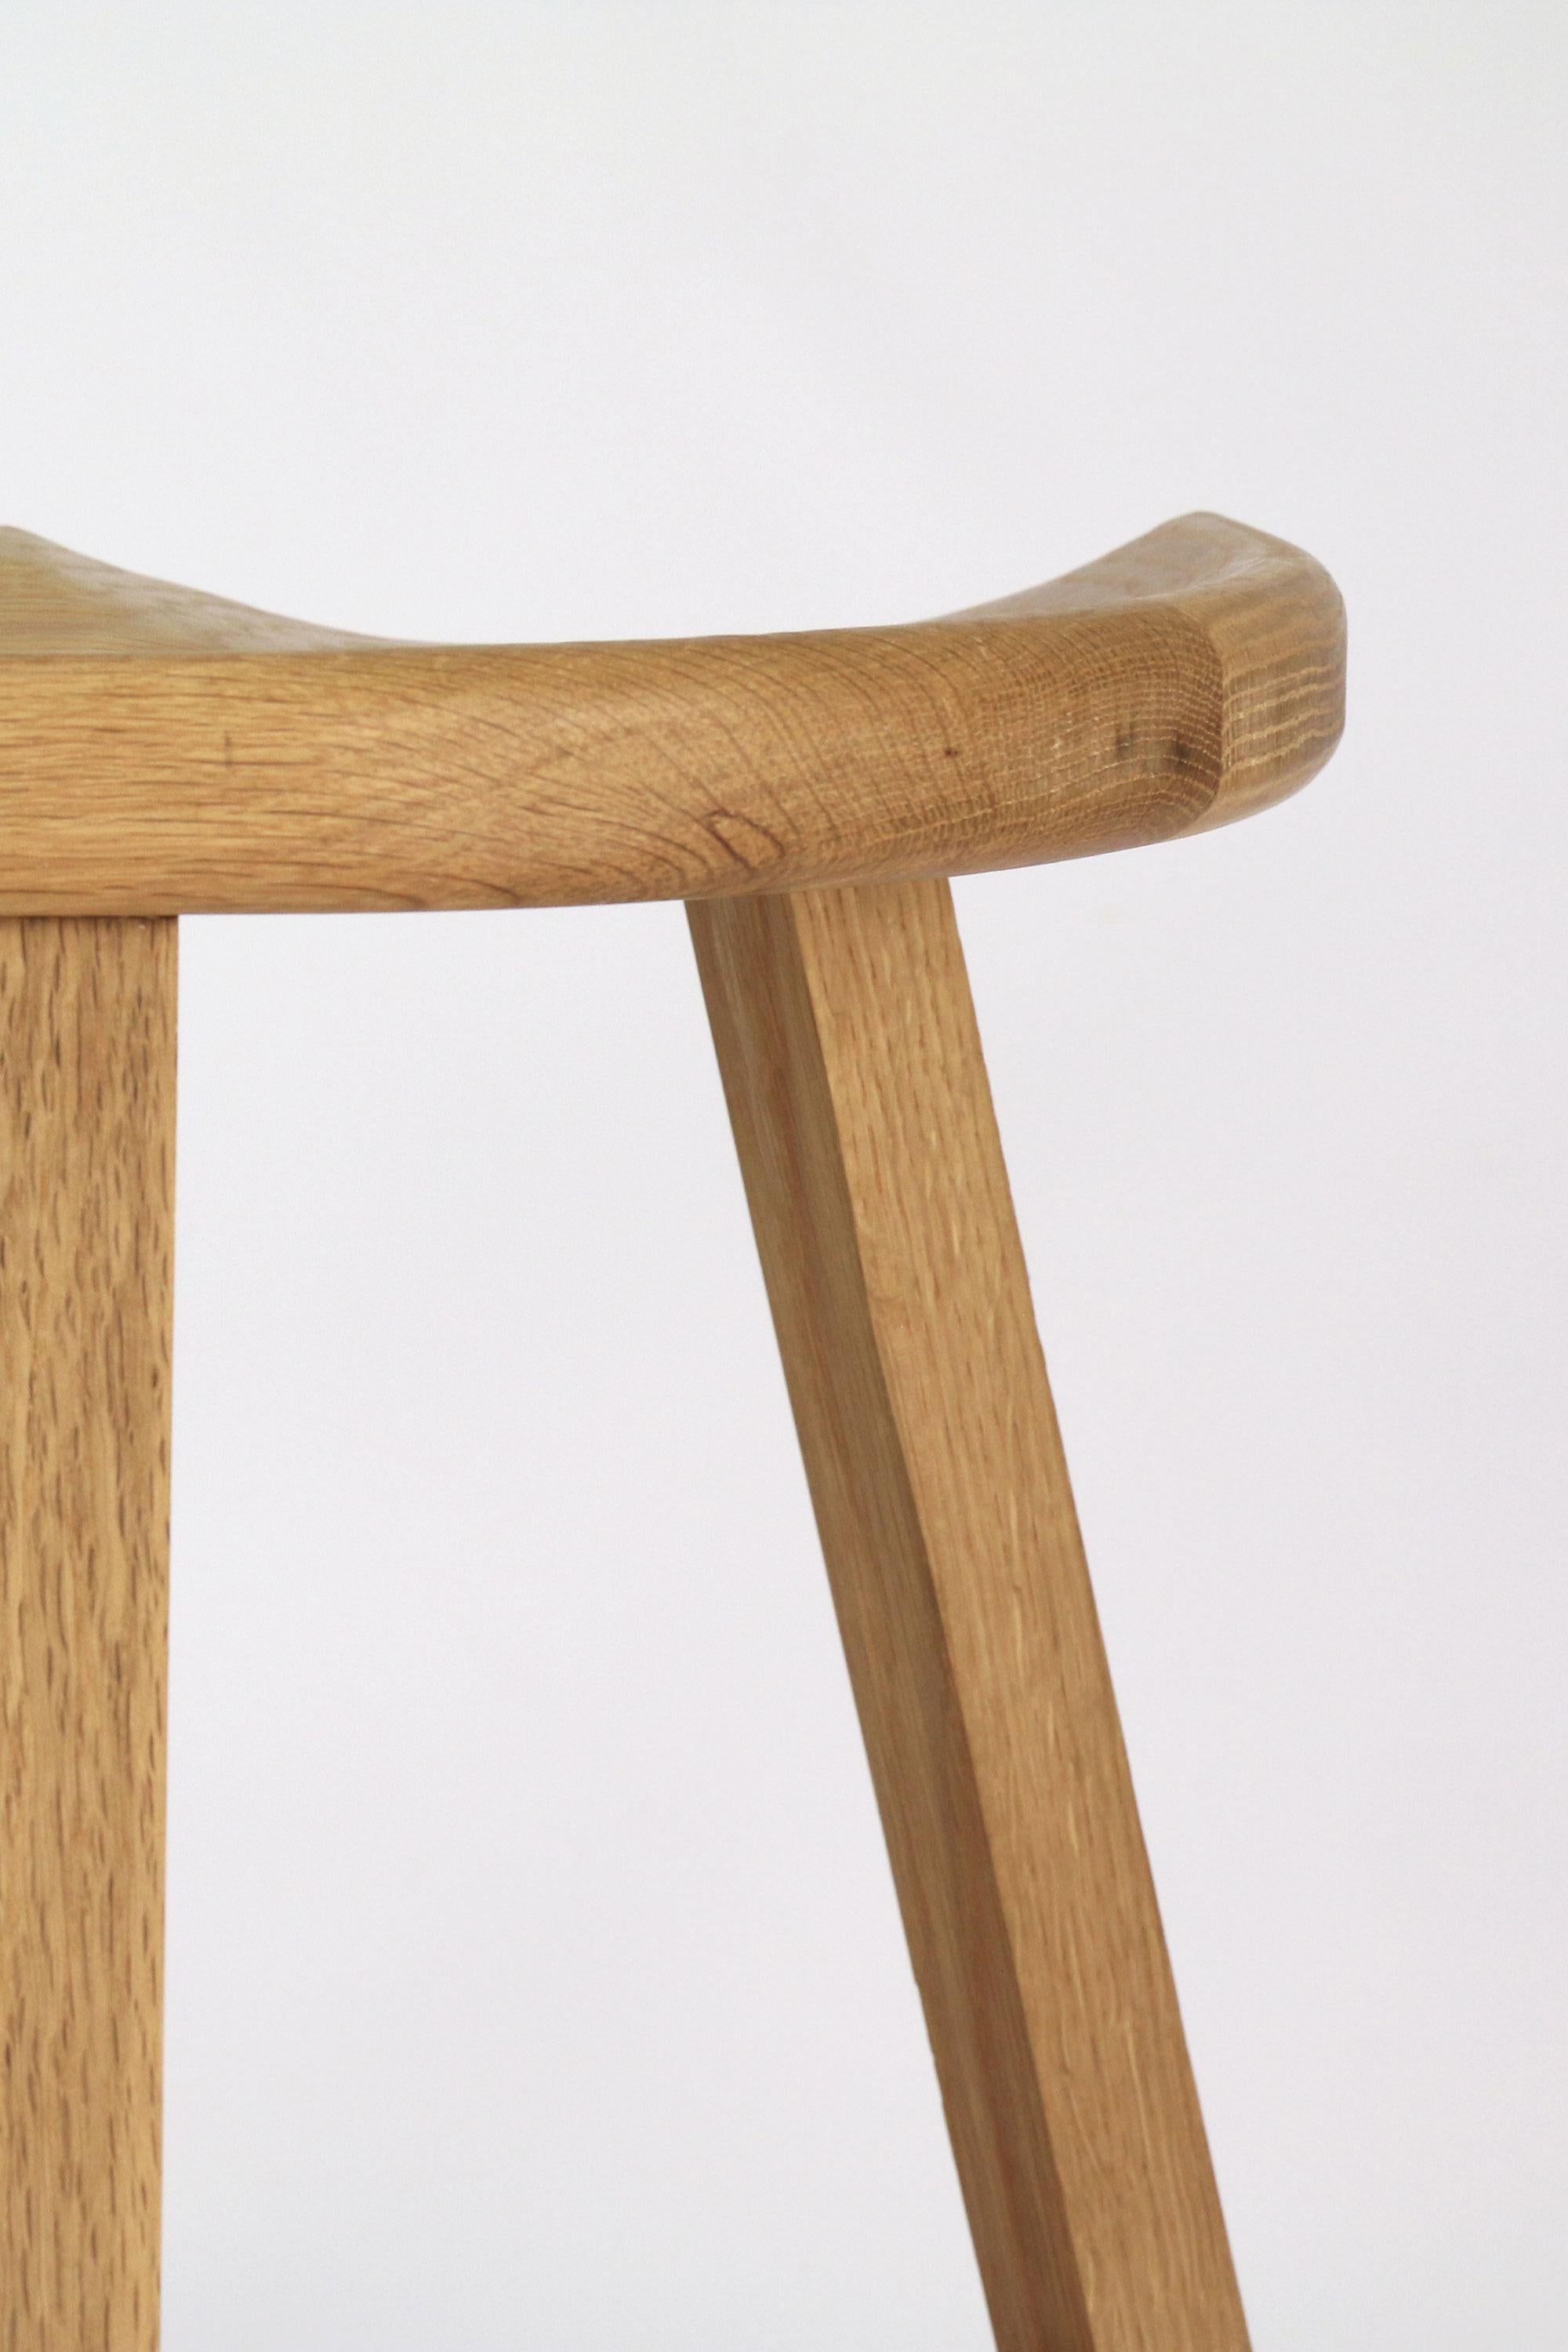 Conçu dans un souci de fonctionnalité et d'élégance, le tabouret de vanité en bois offre les deux, ce qui en fait le complément idéal de votre bureau de vanité. 

Inspirés des chaises Windsor classiques, ces tabourets bas en bois présentent un